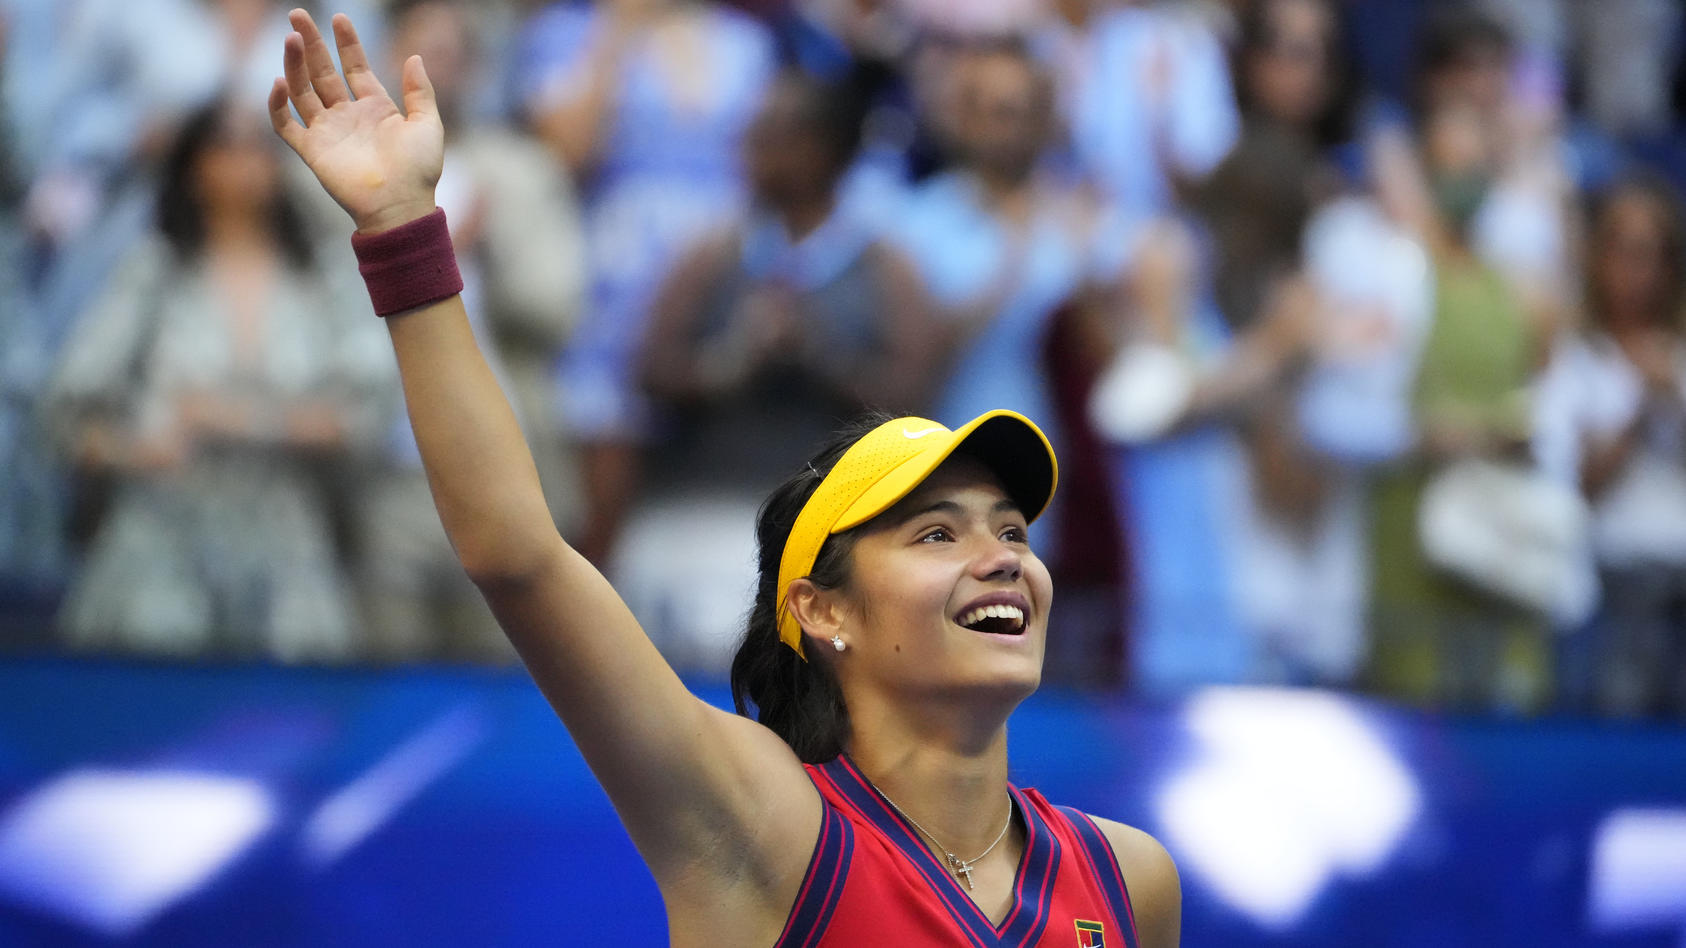 Emma Raducanu gewinnt die US Open